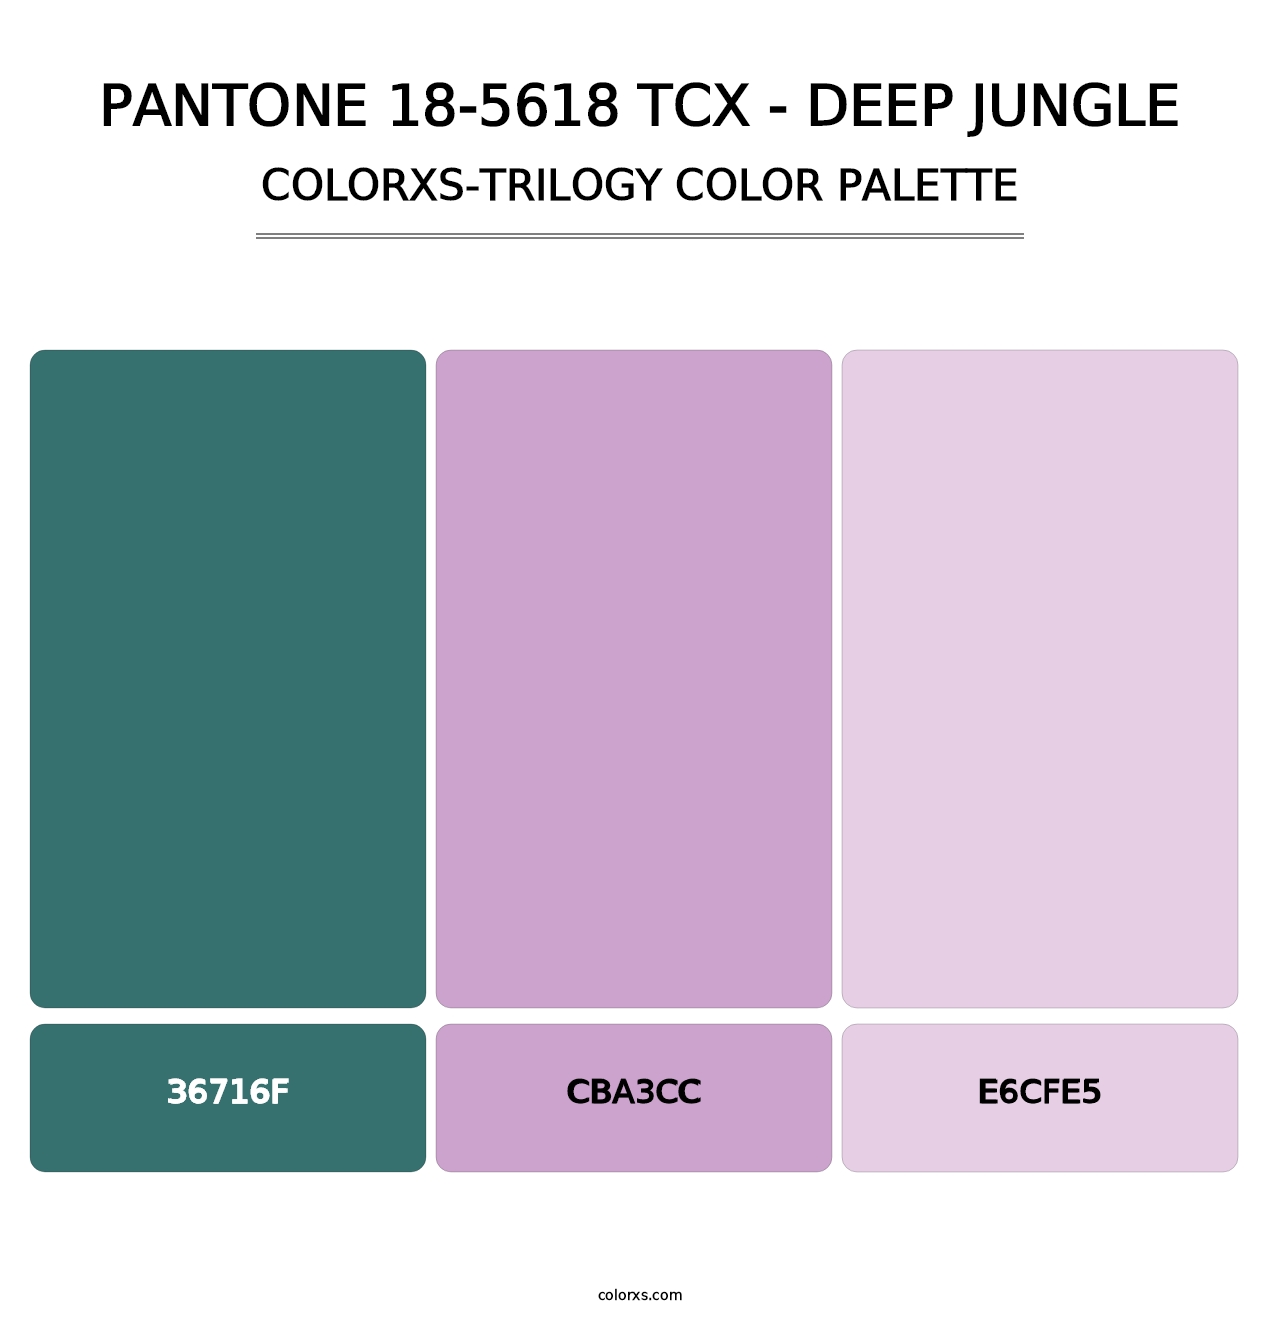 PANTONE 18-5618 TCX - Deep Jungle - Colorxs Trilogy Palette